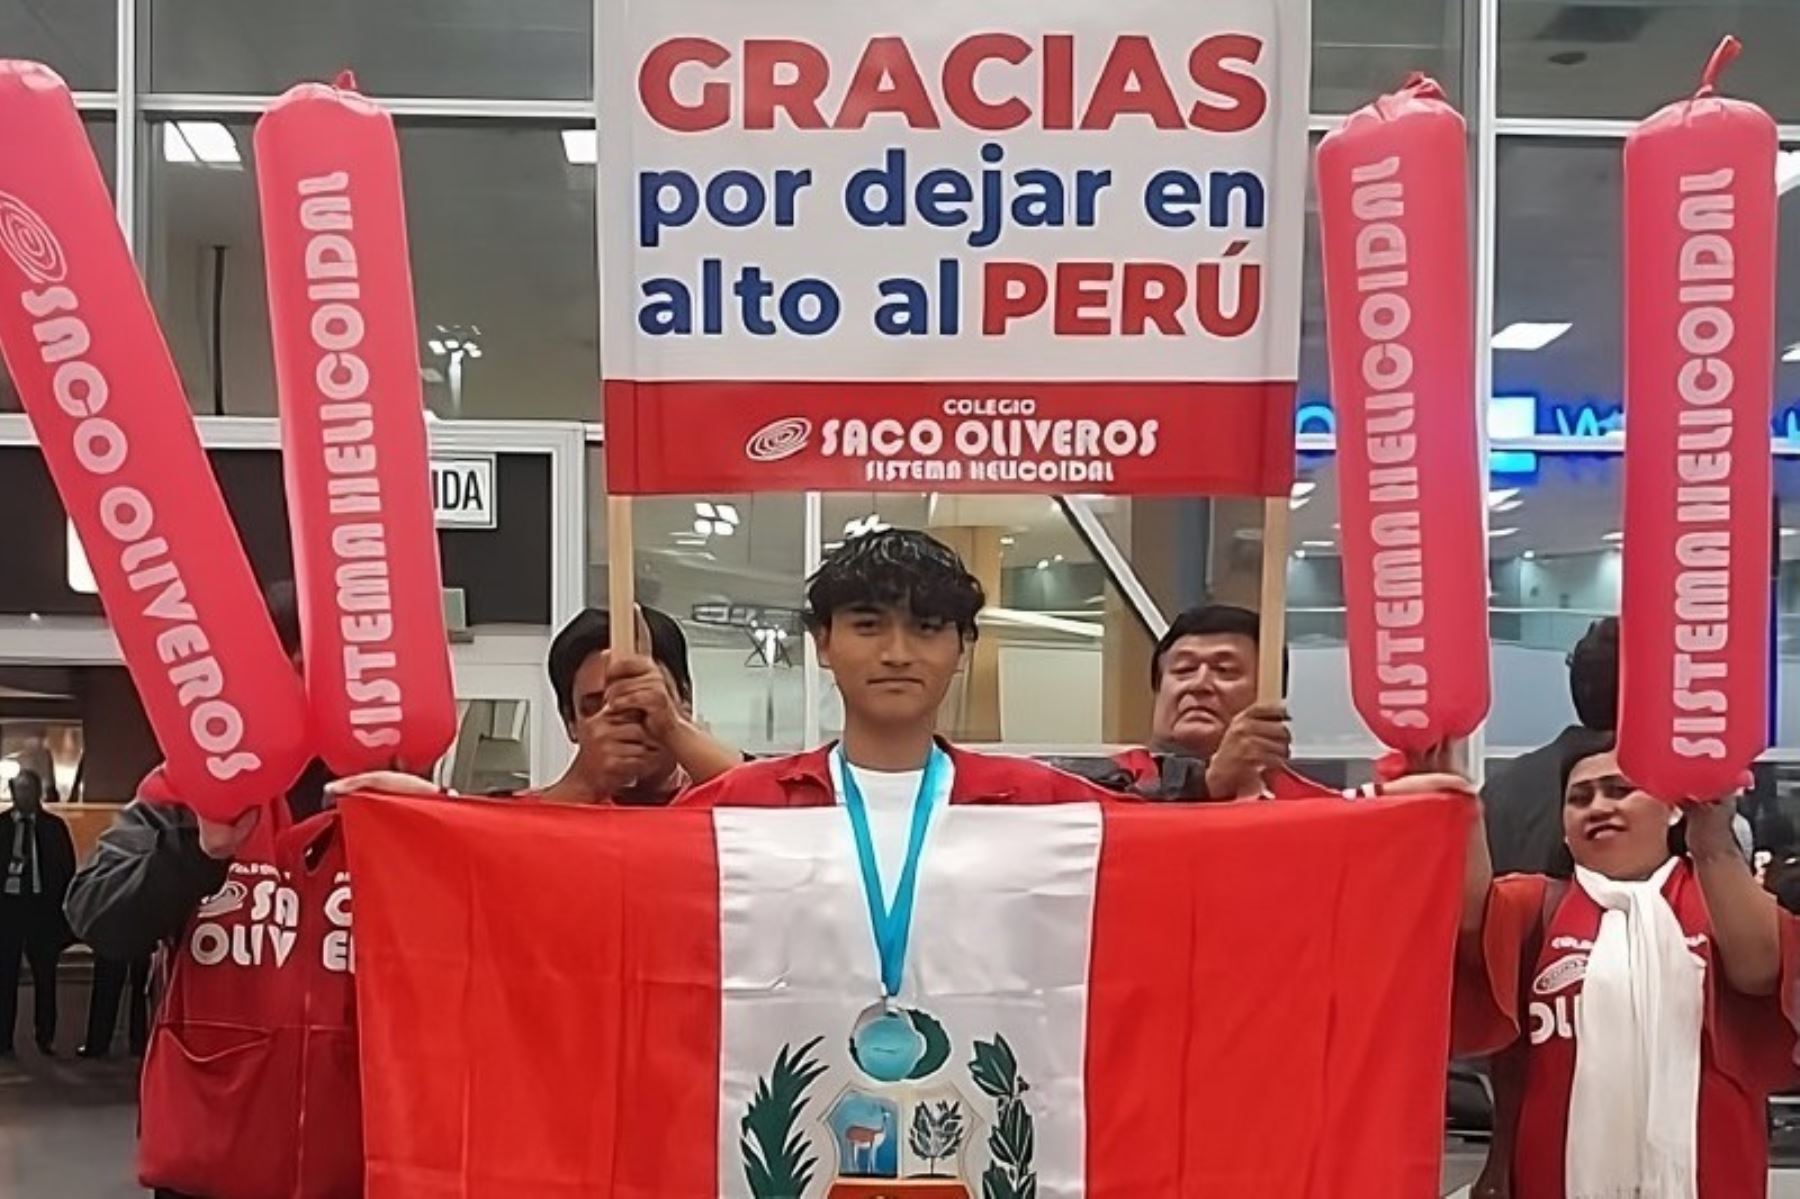 Estudiante peruano obtiene dos medallas en Olimpiada Internacional de Física. Foto:ANDINA/Difusión